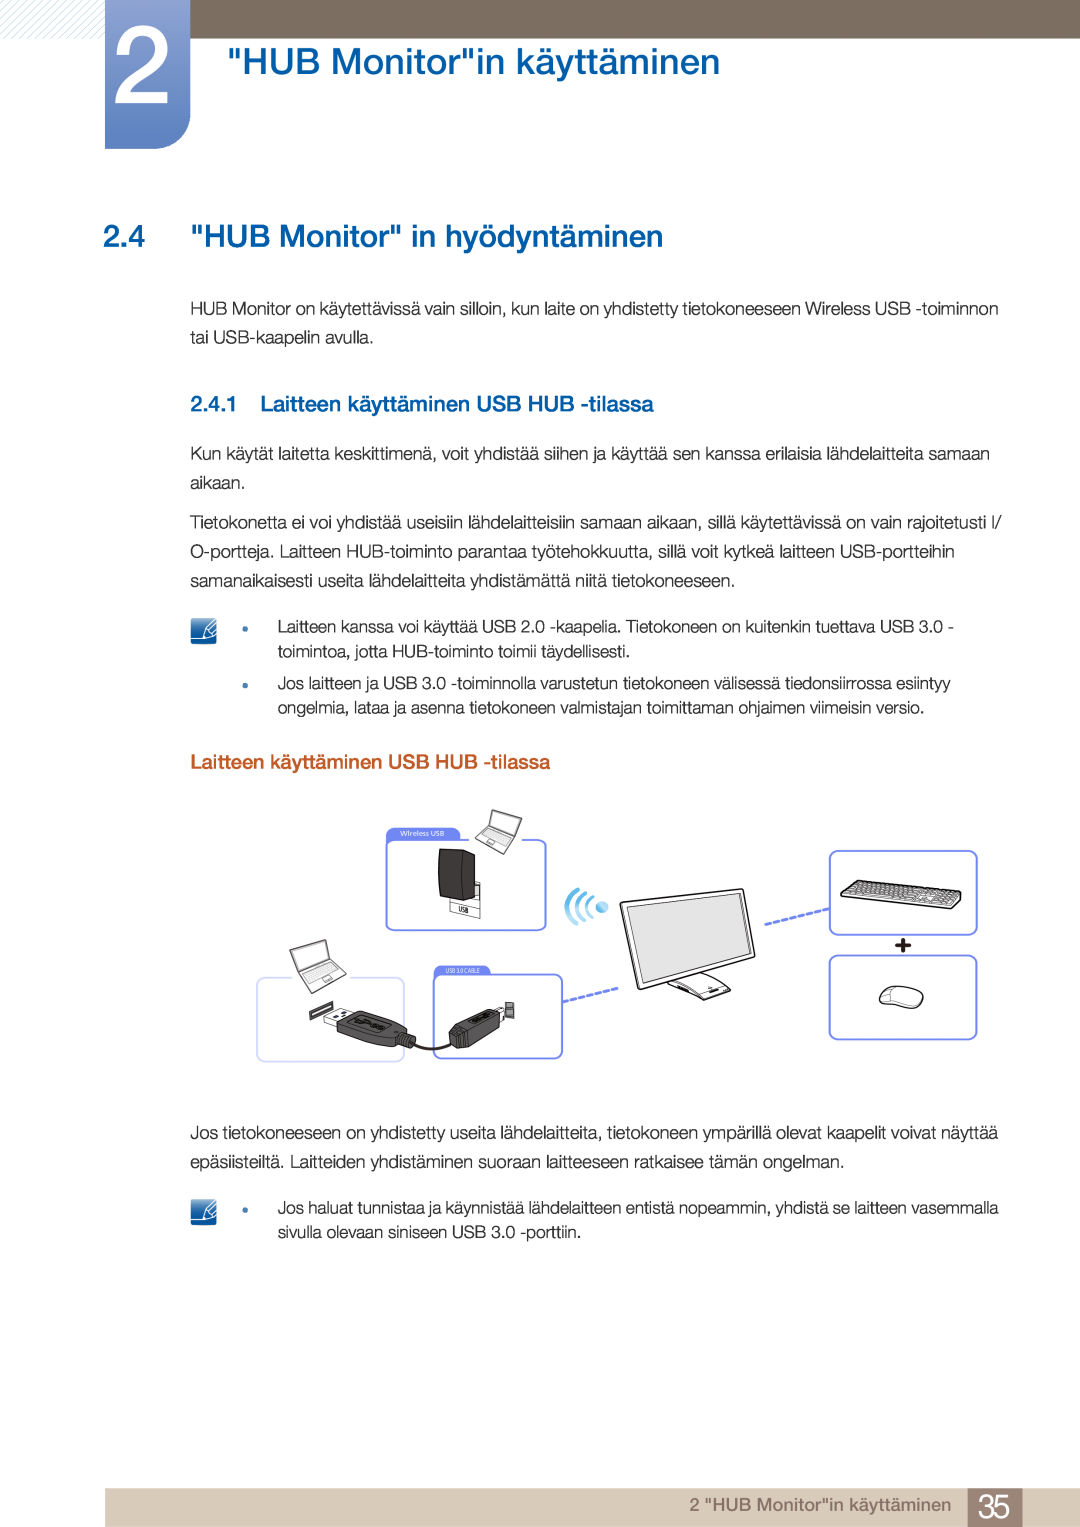 Samsung LC27A750XS/EN manual HUB Monitor in hyödyntäminen, Laitteen käyttäminen USB HUB -tilassa, HUB Monitorin käyttäminen 